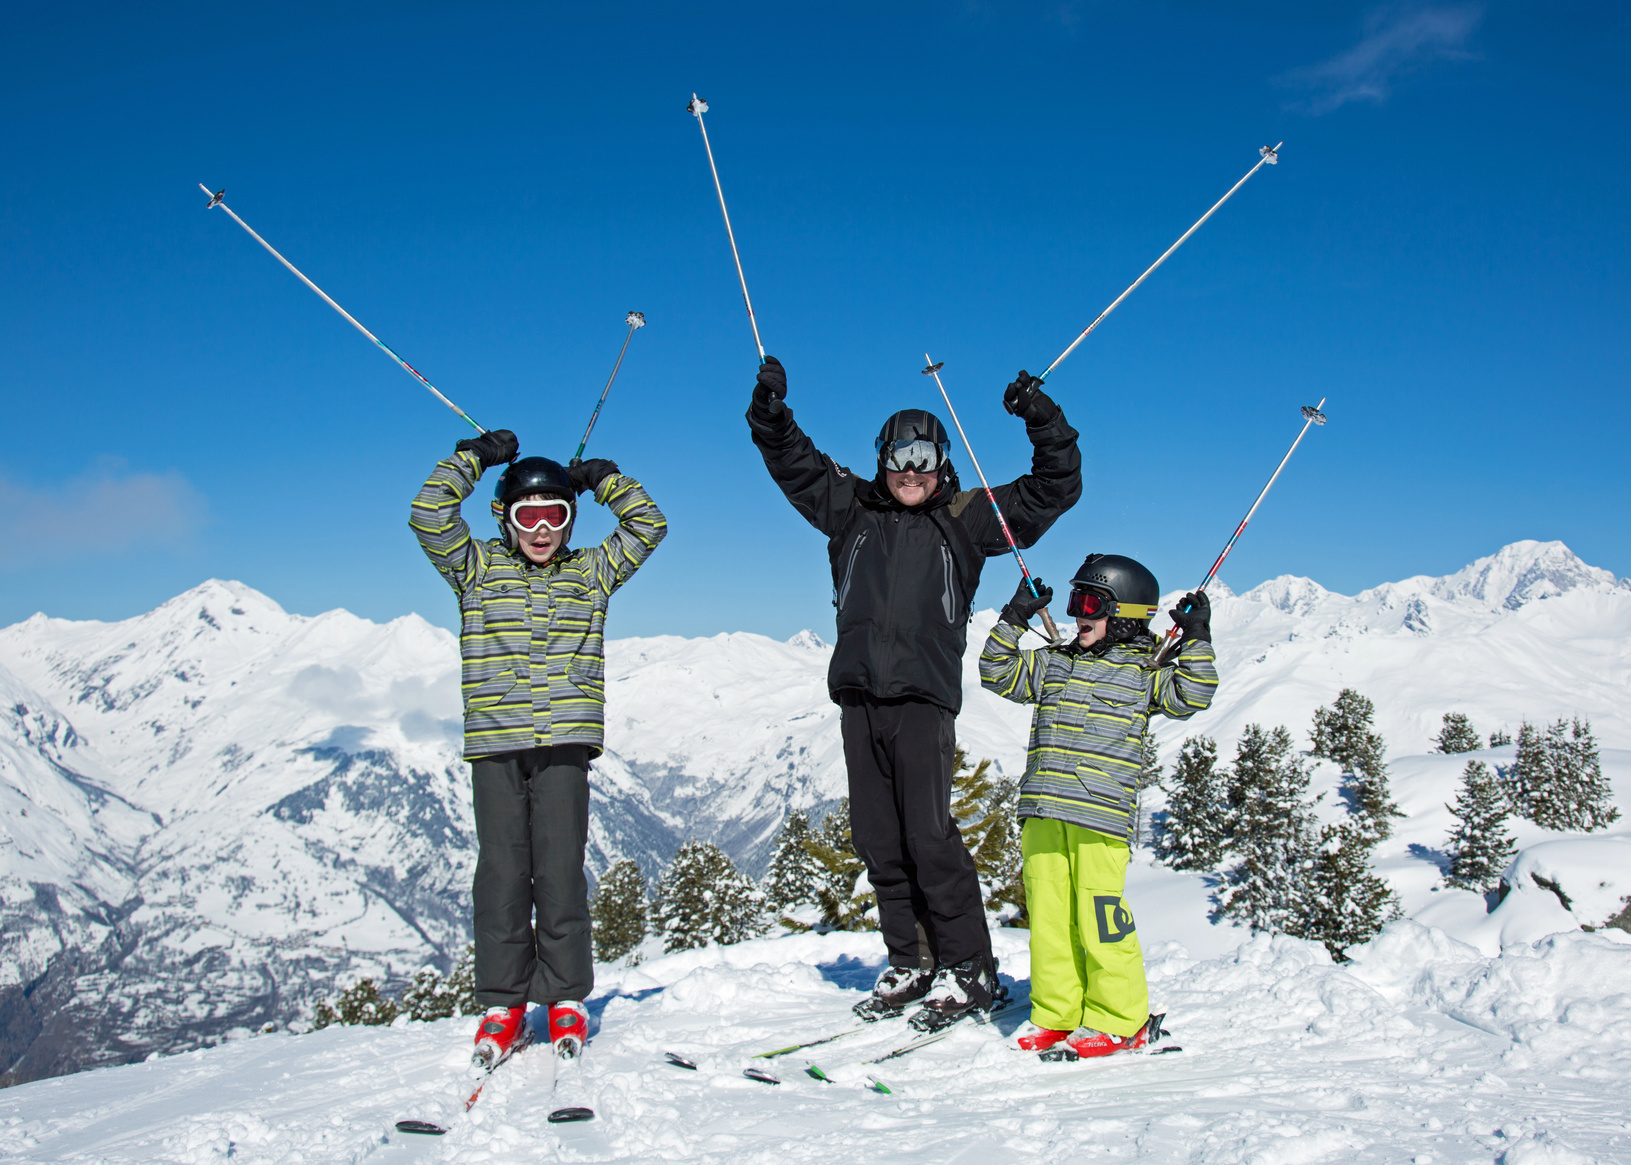 Terroirs alpins et méditerranéens se mêlent dans les stations de ski des Alpes du Sud. © ChantalS, fotolia